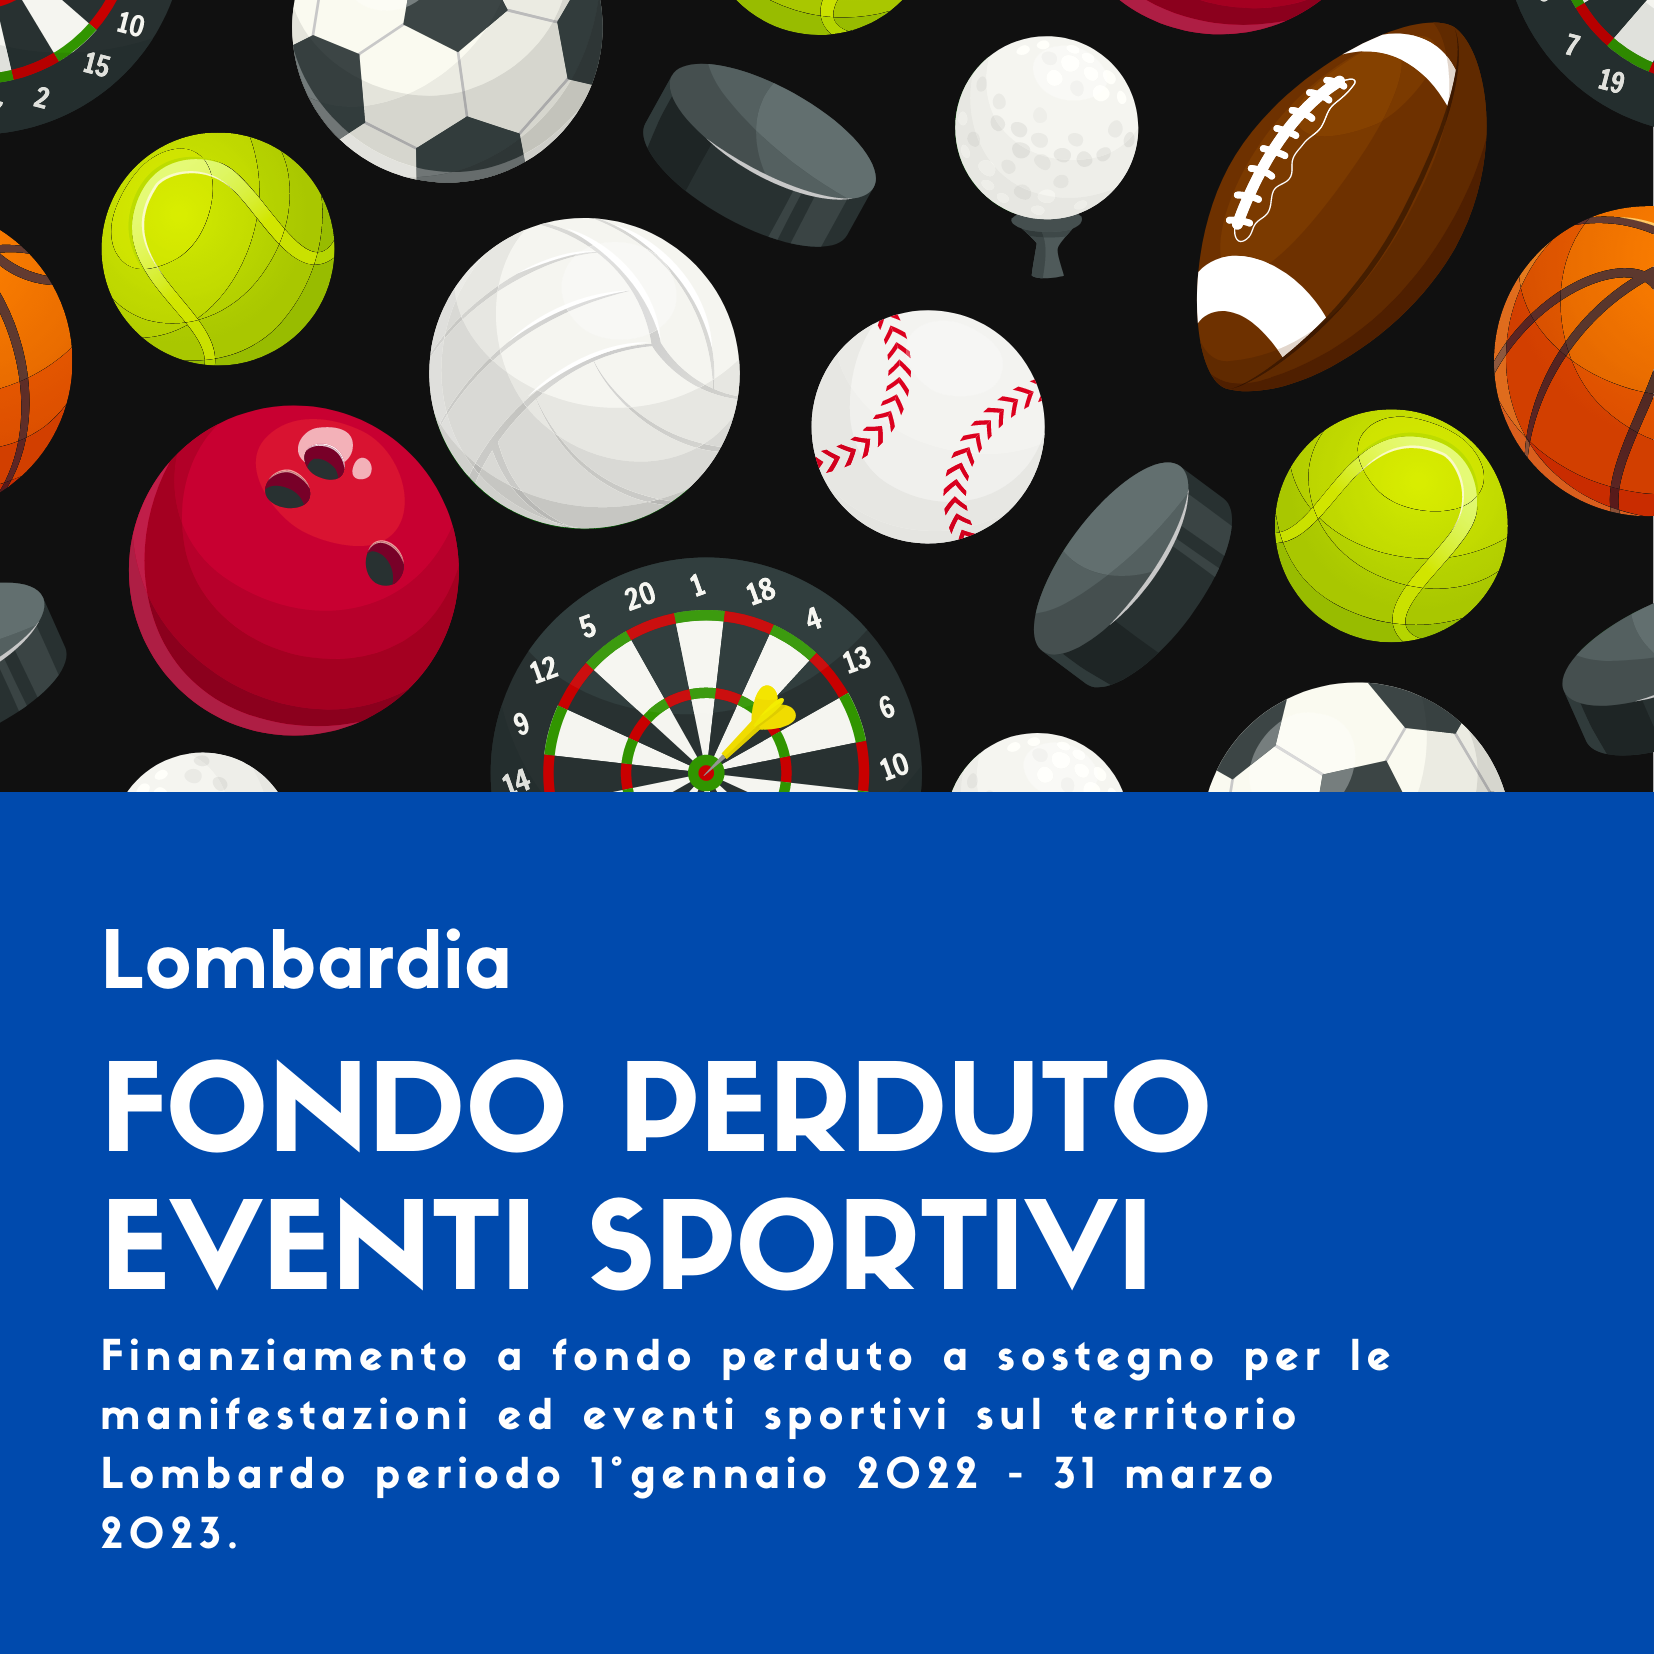 Fondo Perduto Eventi Sportivi in Lombardia